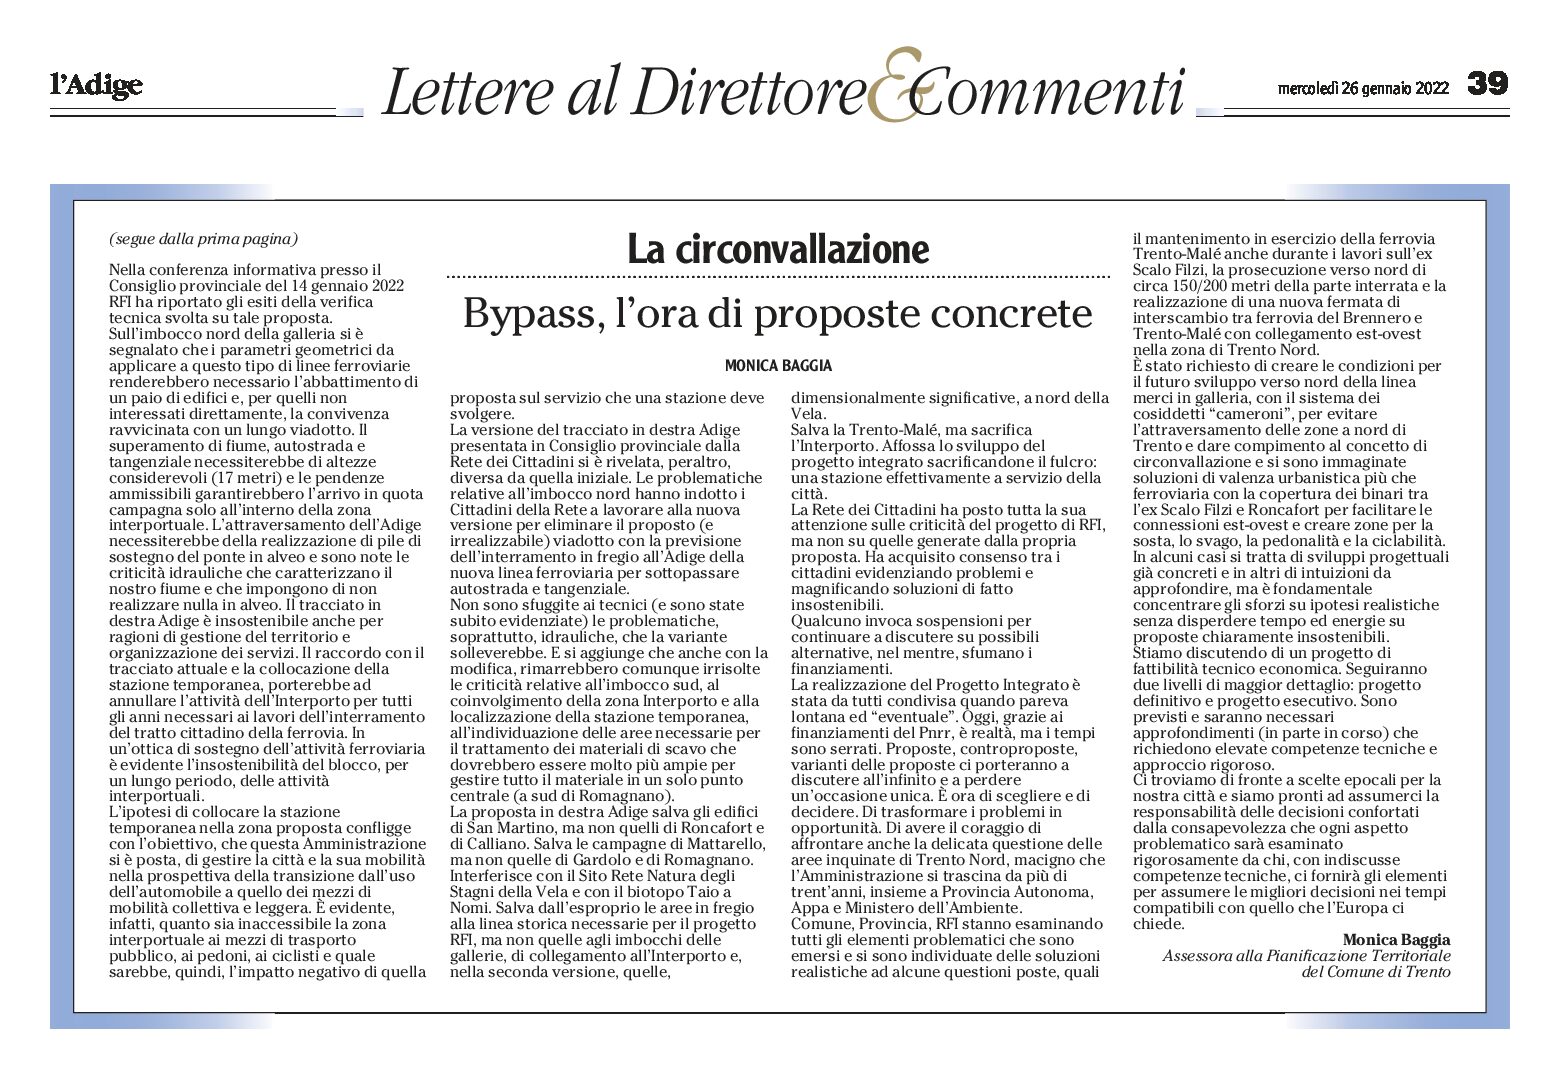 Trento, bypass: l’ora di proposte concrete. Lettera dell’assessora Baggia